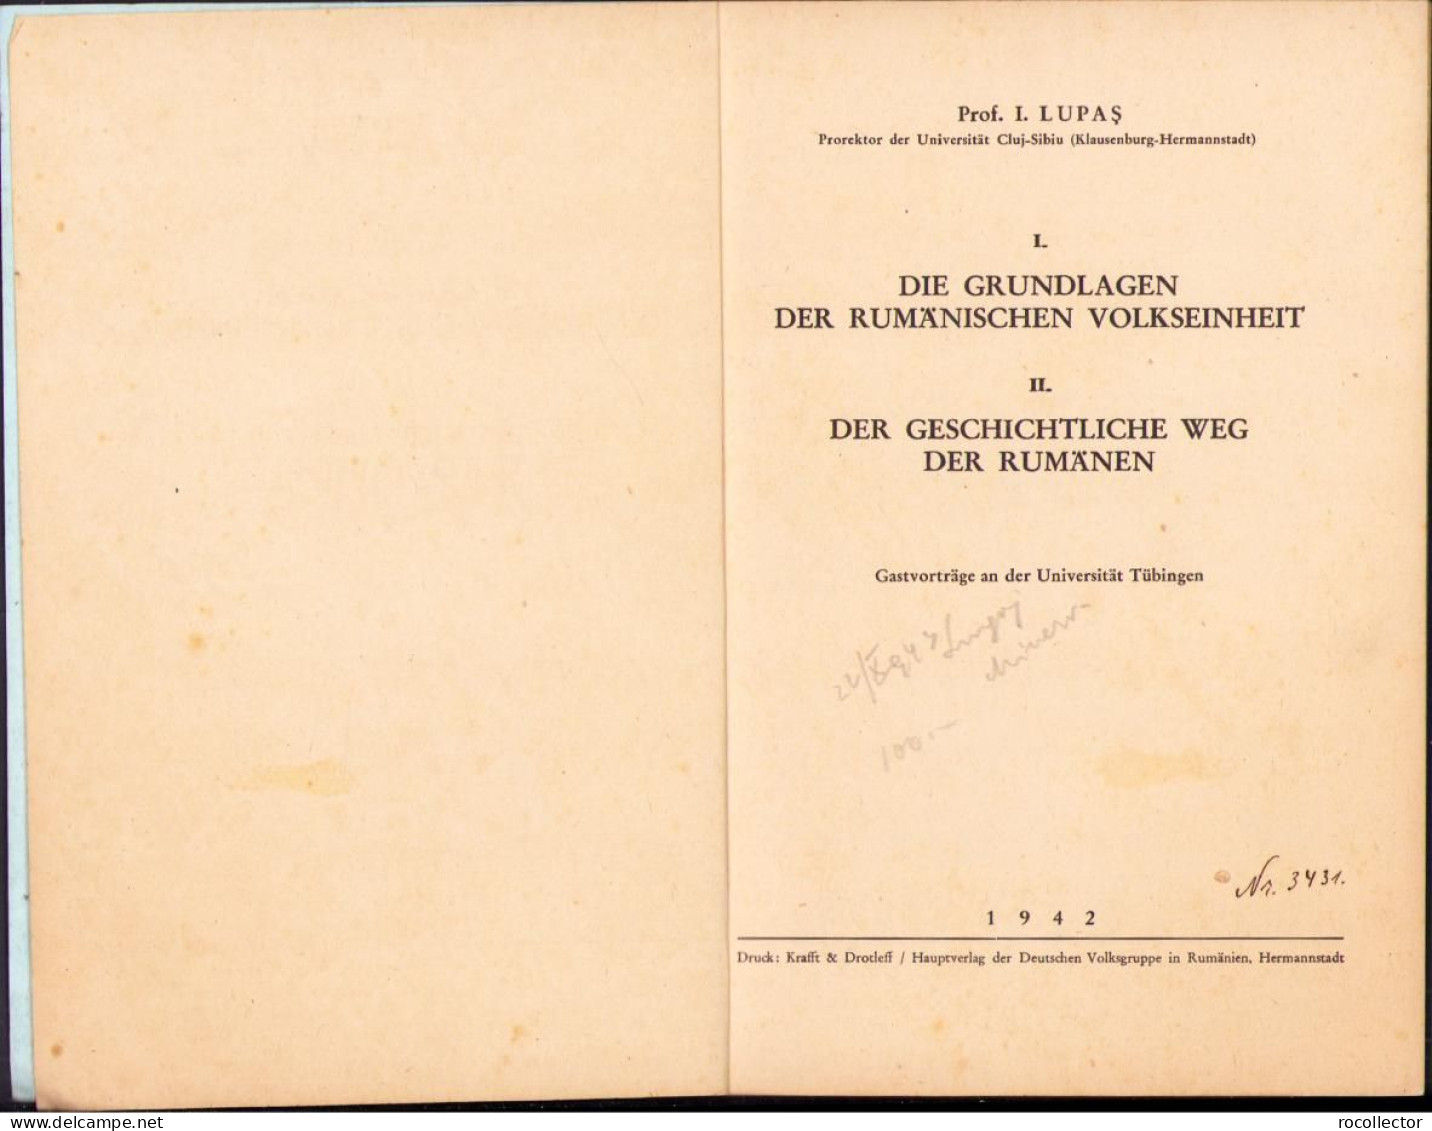 Die Grundlagen Der Rumänischen Volkseinheit. Der Geschichtliche Weg Der Rumänen Von Ioan Lupaș, 1942 C2152 - Alte Bücher